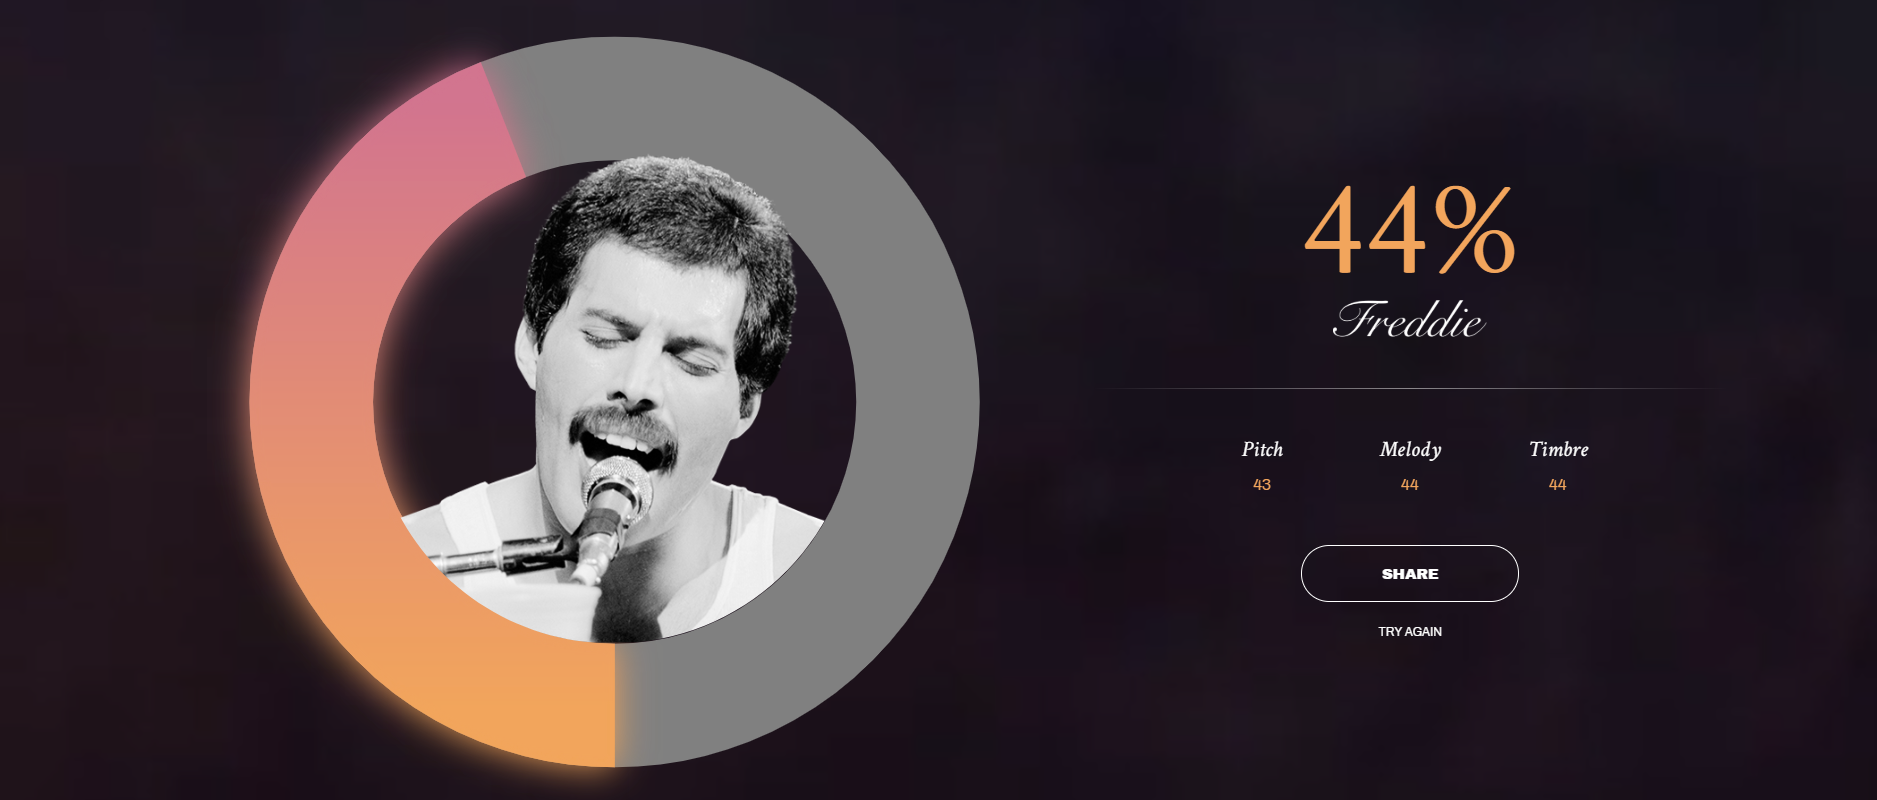 L'outil de Google chiffre, en pourcentage, la ressemblance de votre voix avec celle de Freddie Mercury.